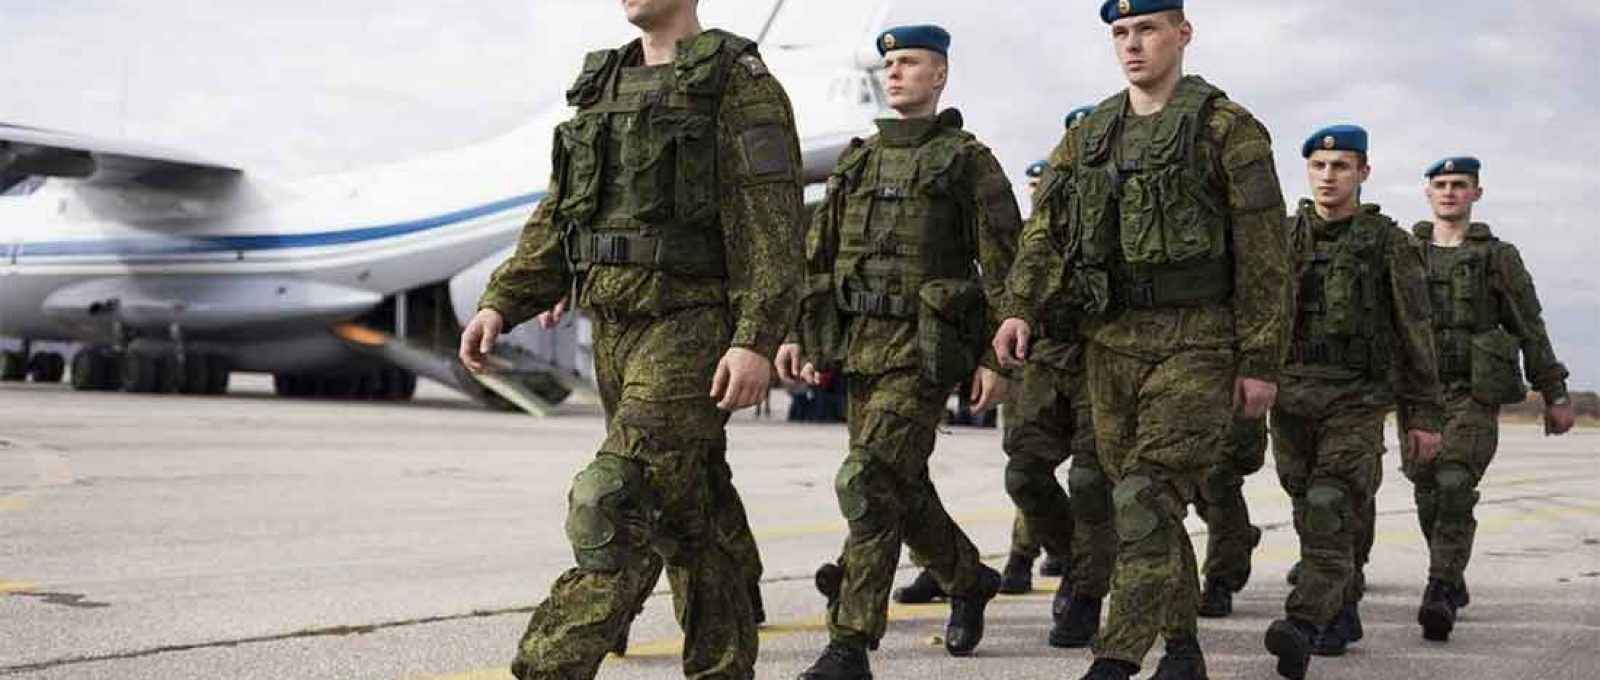 Militares da Rússia (Foto: Zarko Skoko/Ministério da Defesa República da Sérvia).